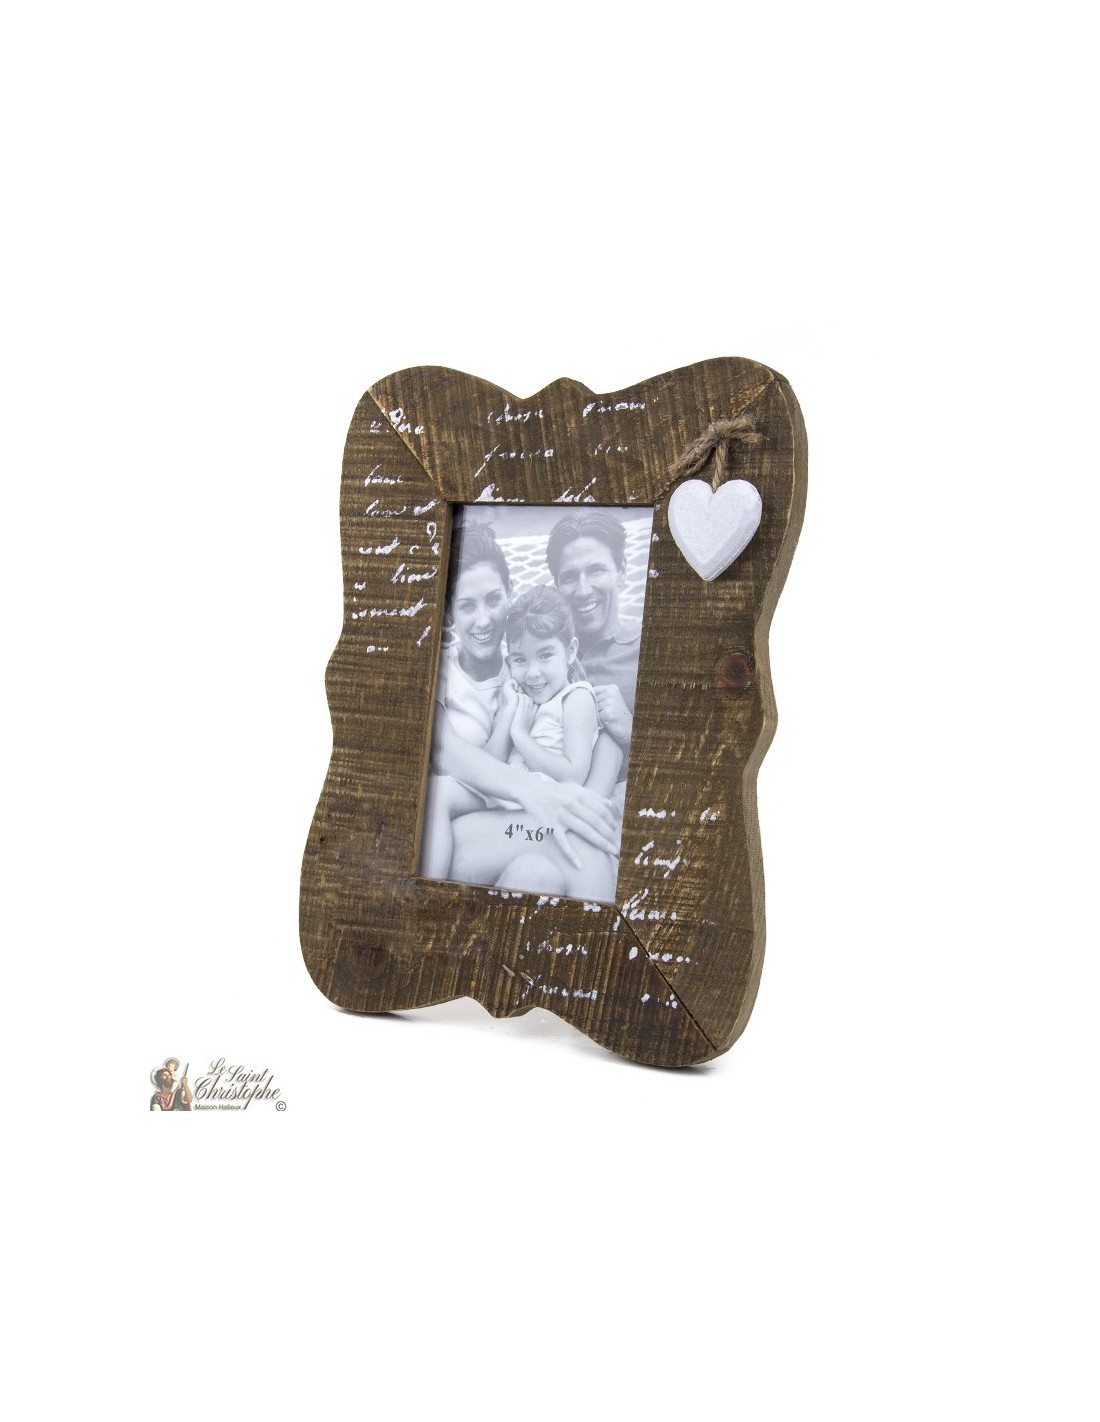 Maak leven Penelope houding Fotolijst met houten hartmotieven, mooie decoratie